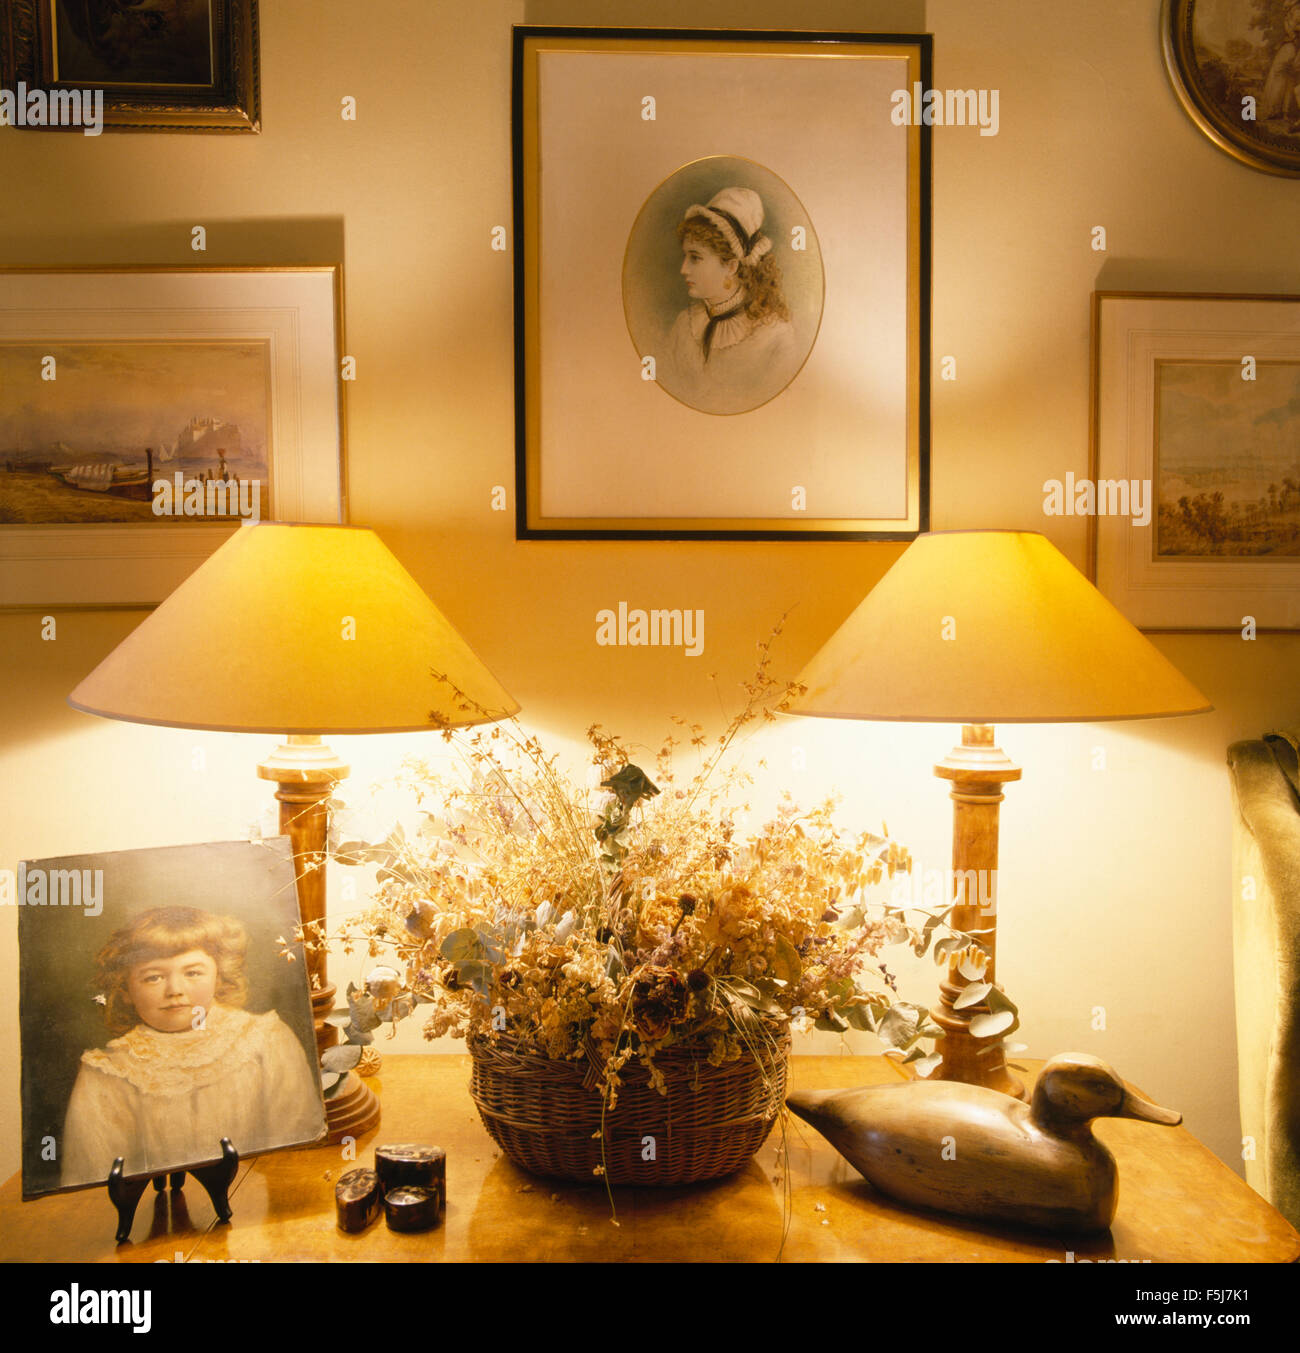 Gruppo di immagini sulla parete sopra la tabella con le lampade accese e un cesto di fiori secchi accanto a un'anatra in legno Foto Stock